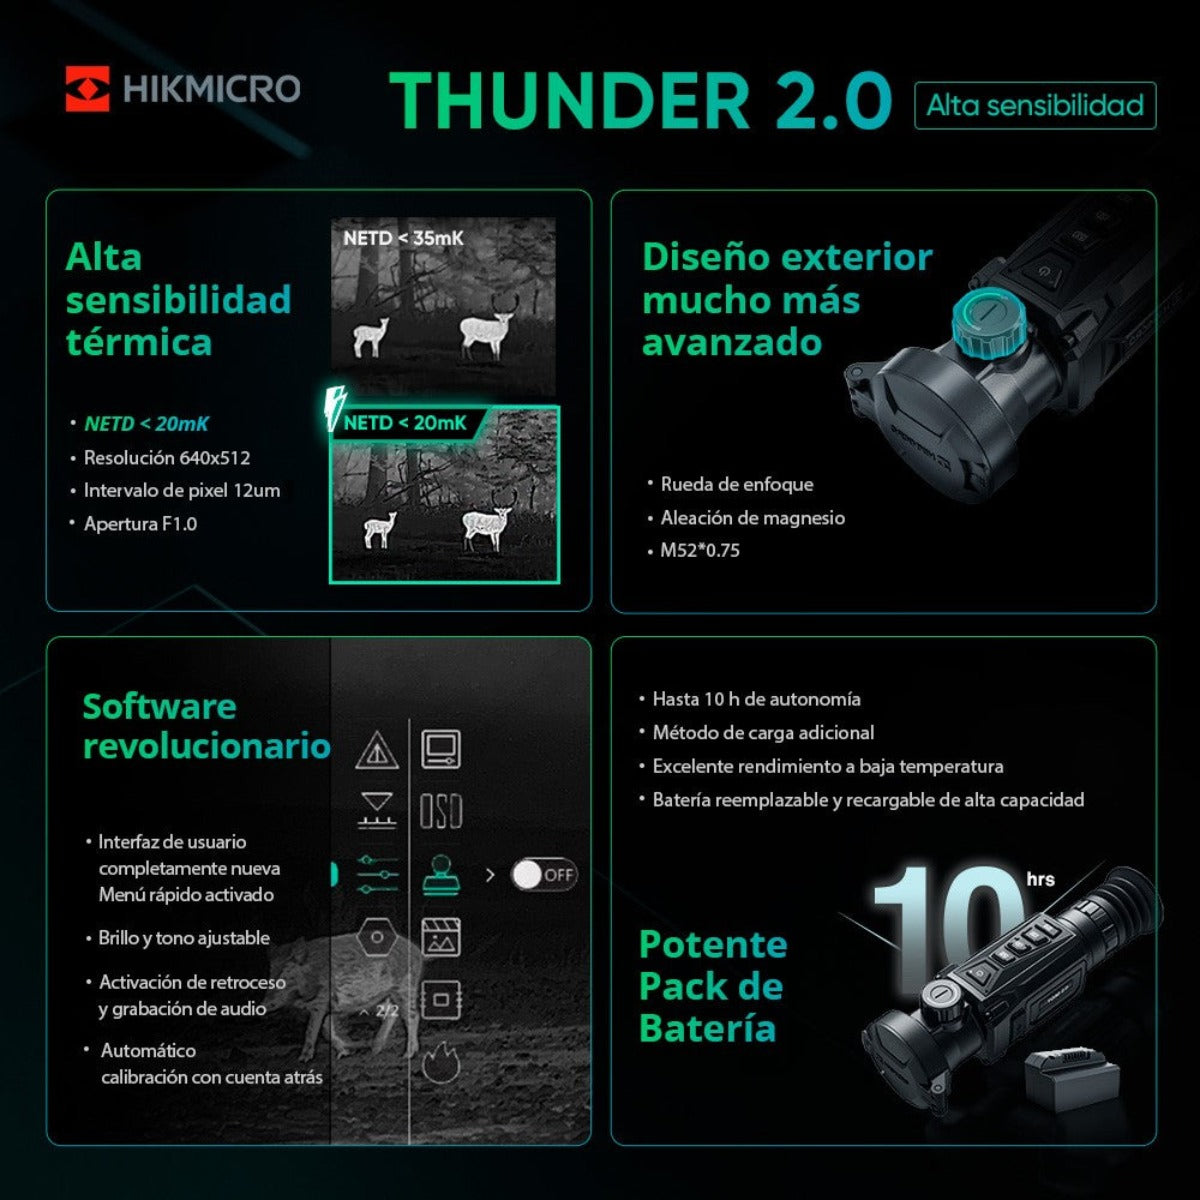 Visor Térmico Hikmicro Thunder TQ50 2.0